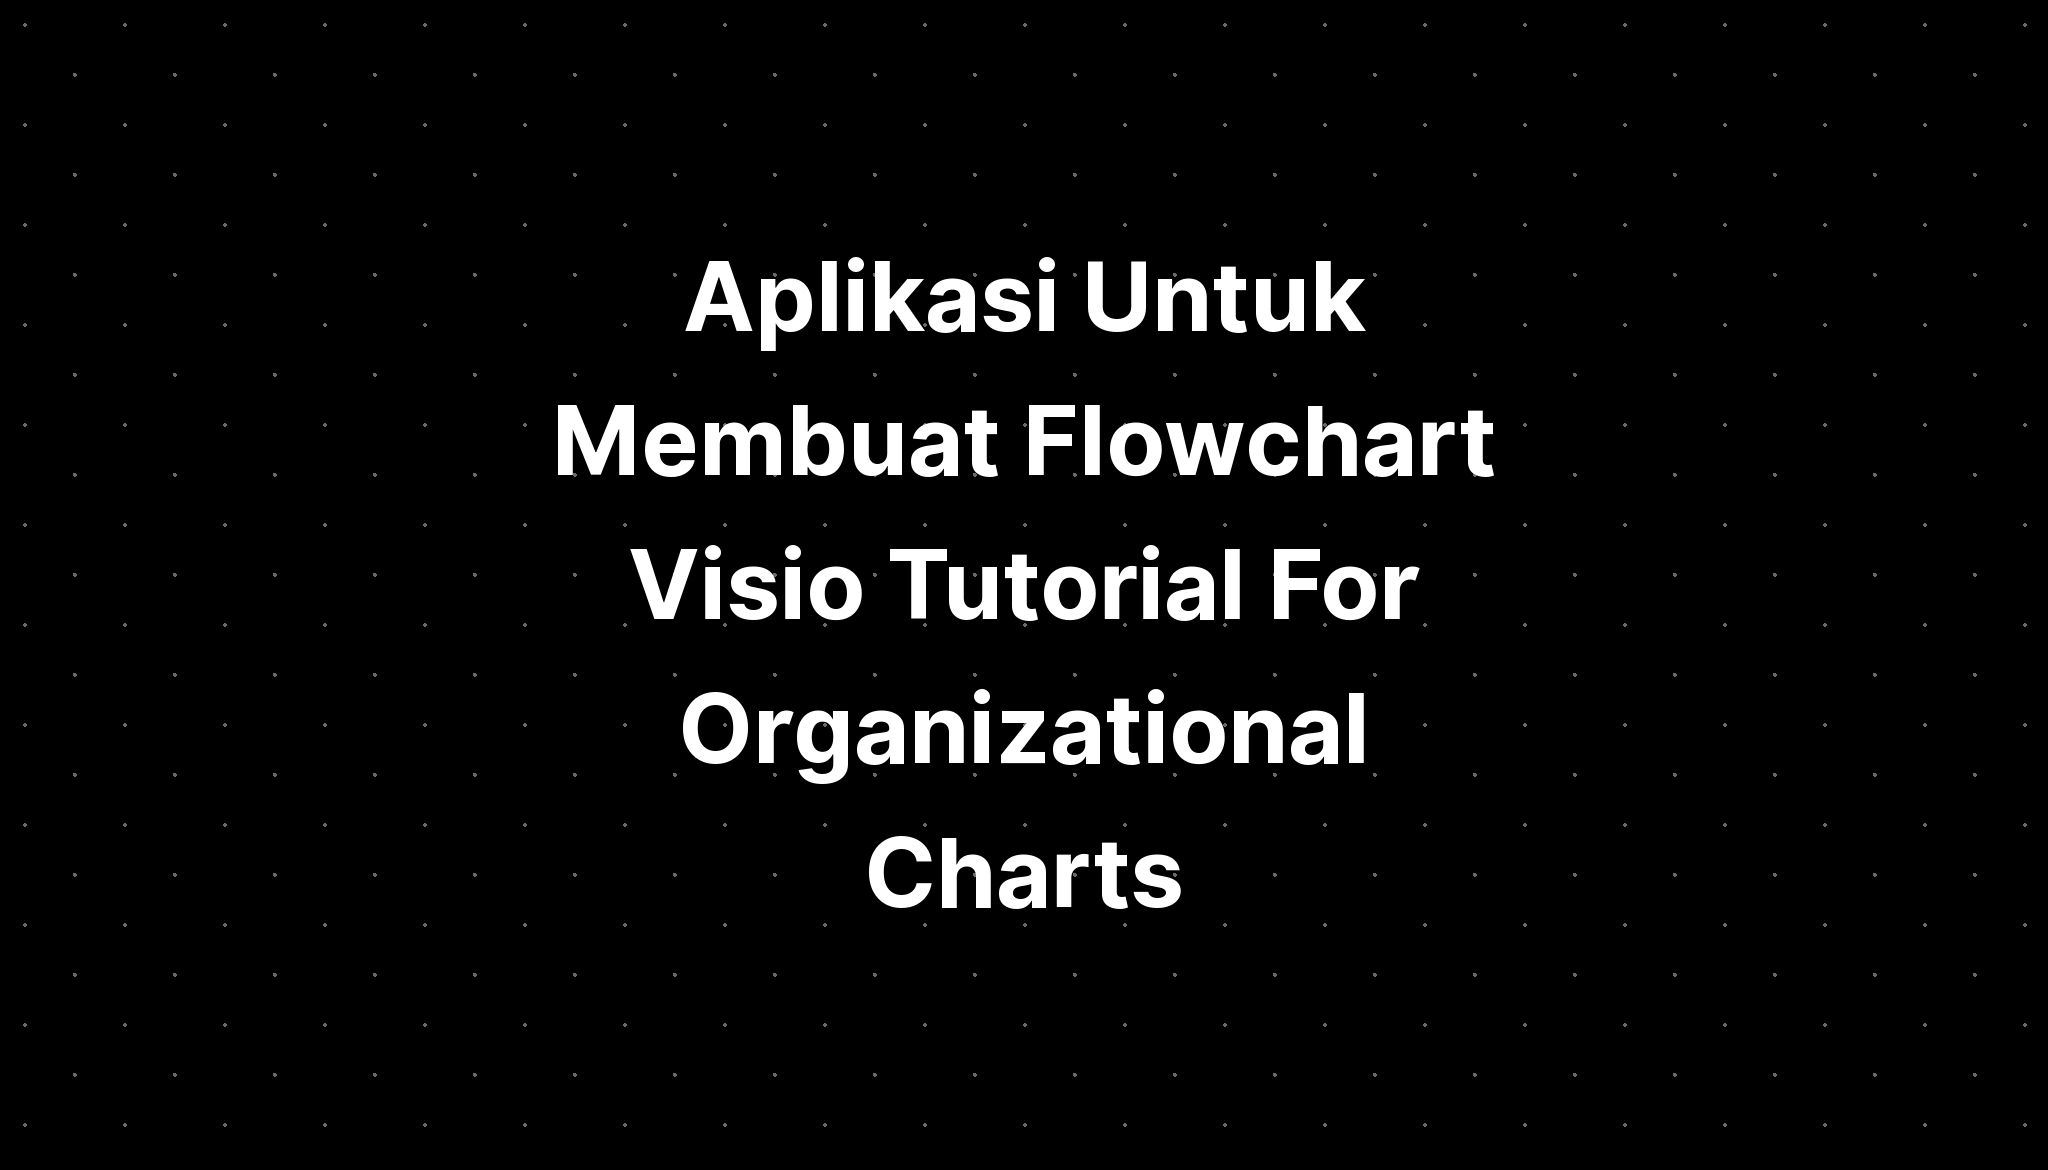 Aplikasi Untuk Membuat Flowchart Visio Tutorial For Organizational Charts Imagesee 3724